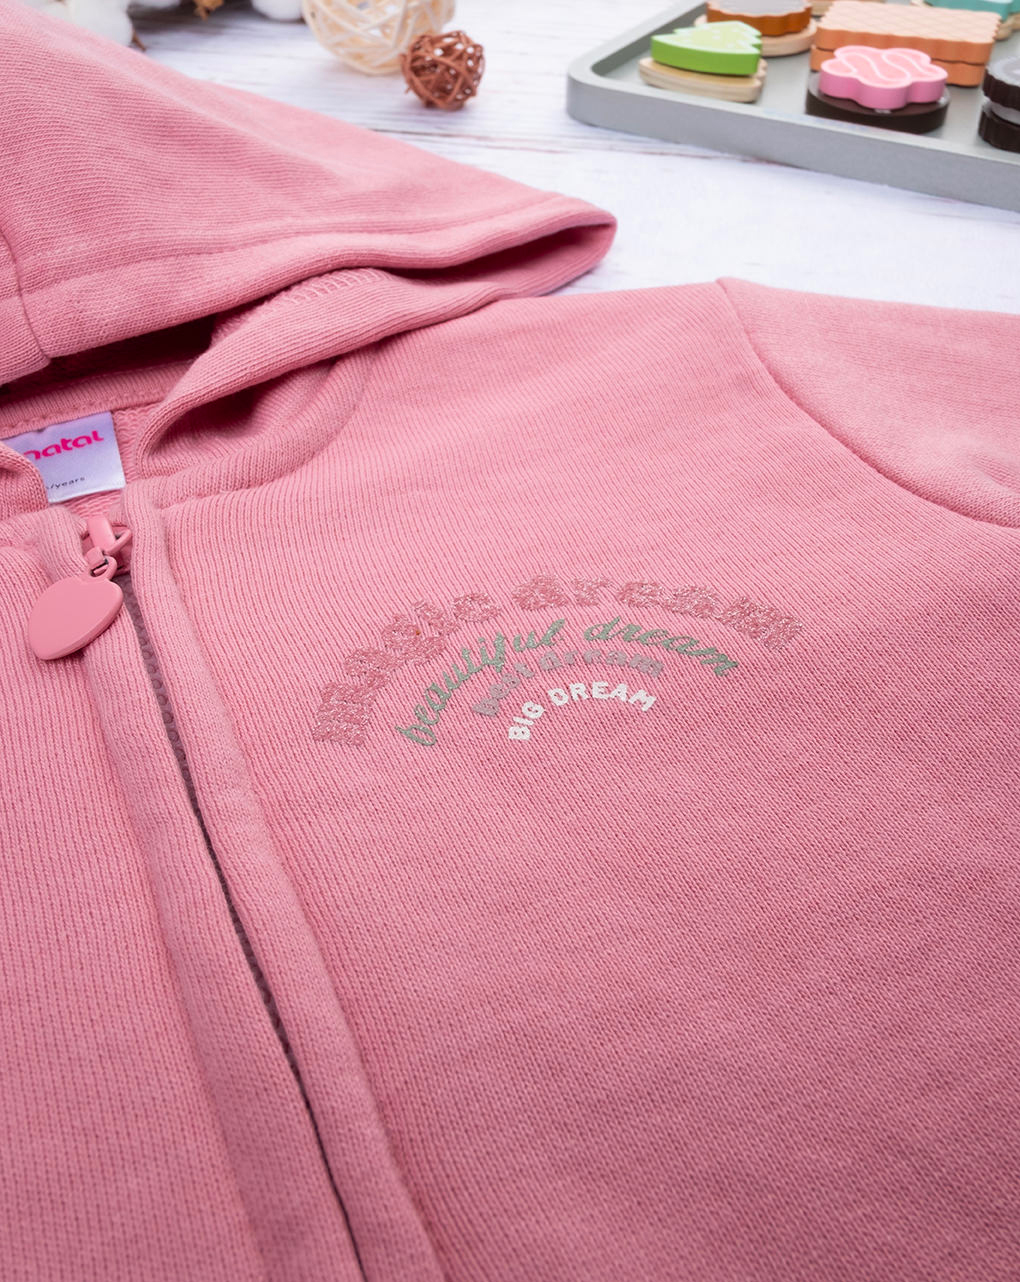 παιδική ζακέτα φούτερ ροζ με ουράνιο τόξο για κορίτσι - Prénatal